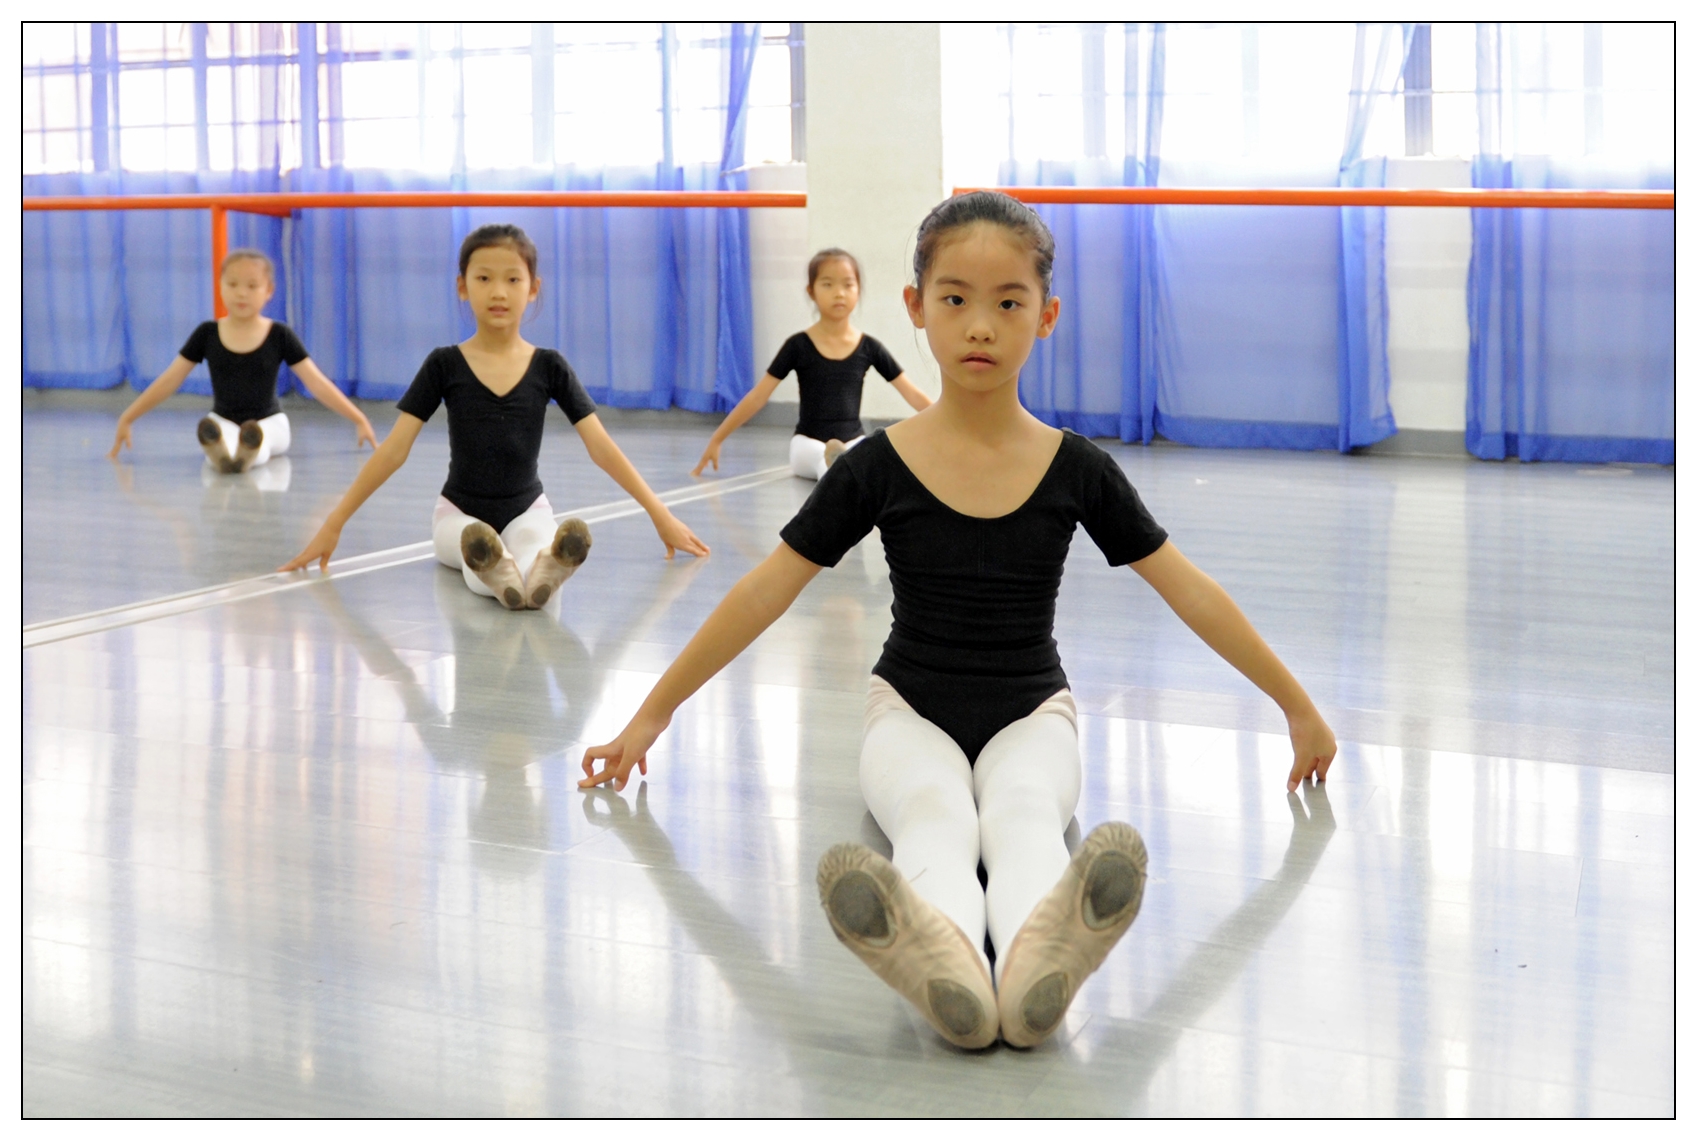 少儿练习舞蹈基本功应该注意哪些问题?-学习幼儿舞蹈基本功要注意什么